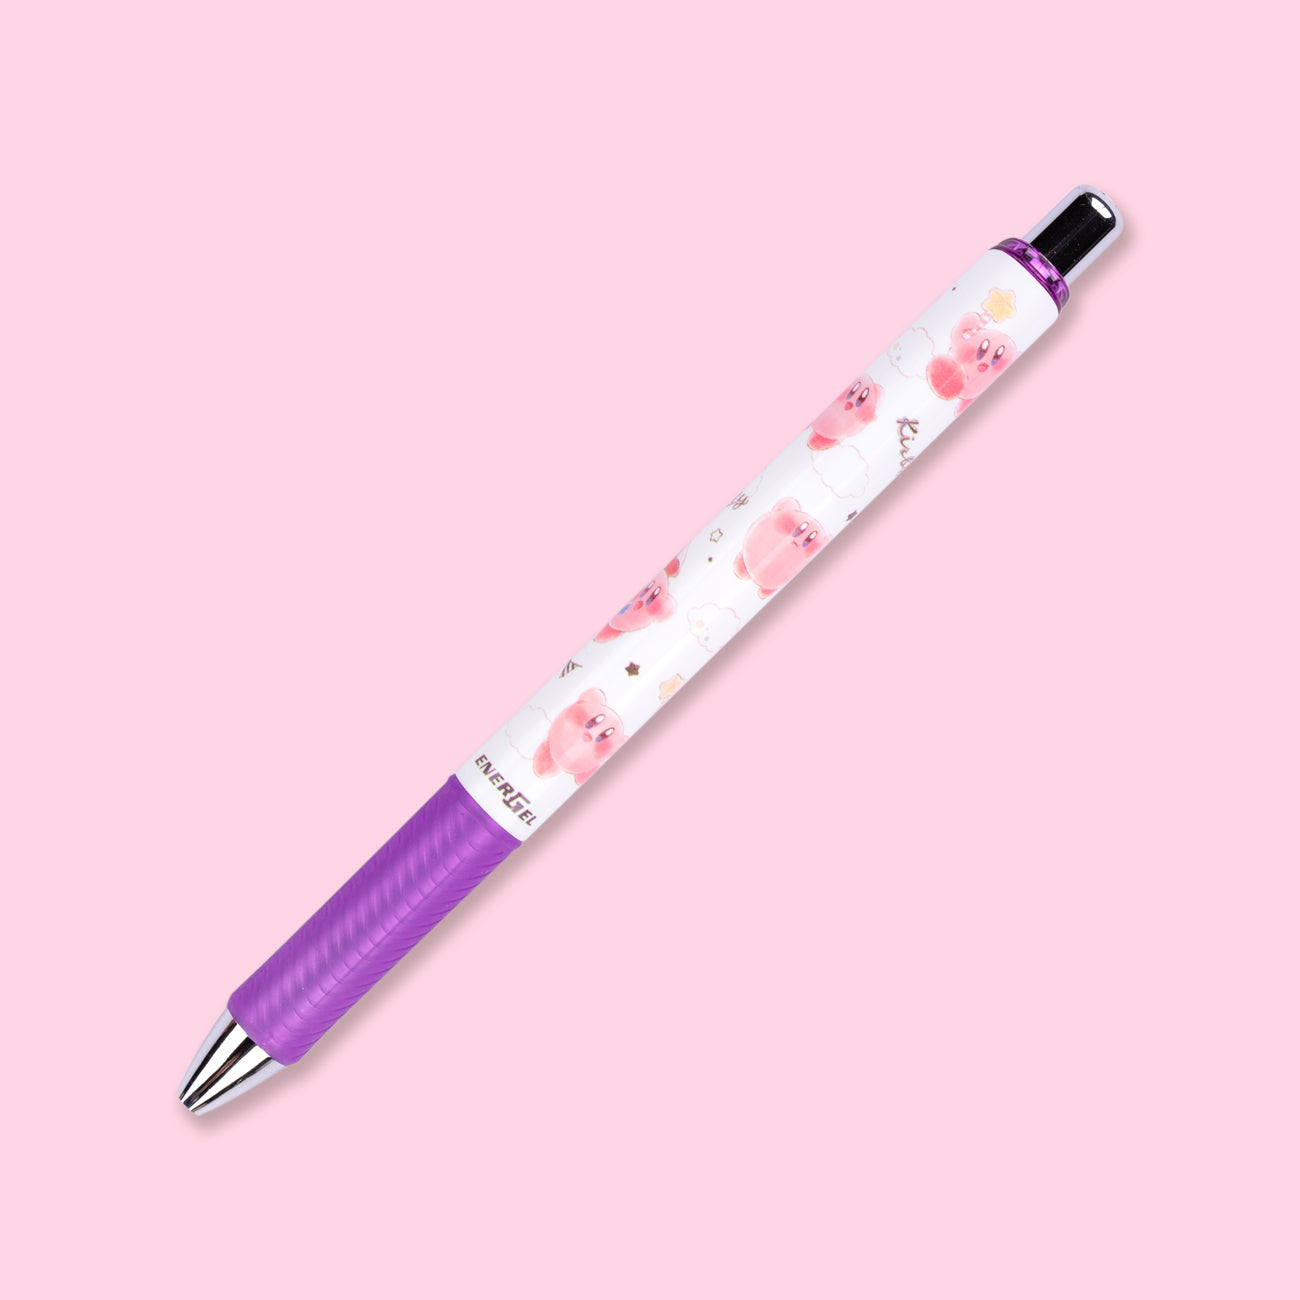 Pentel EnerGel Kirby Limited Edition Gel Pen - 0.5 mm - Black Ink - Purple Grip